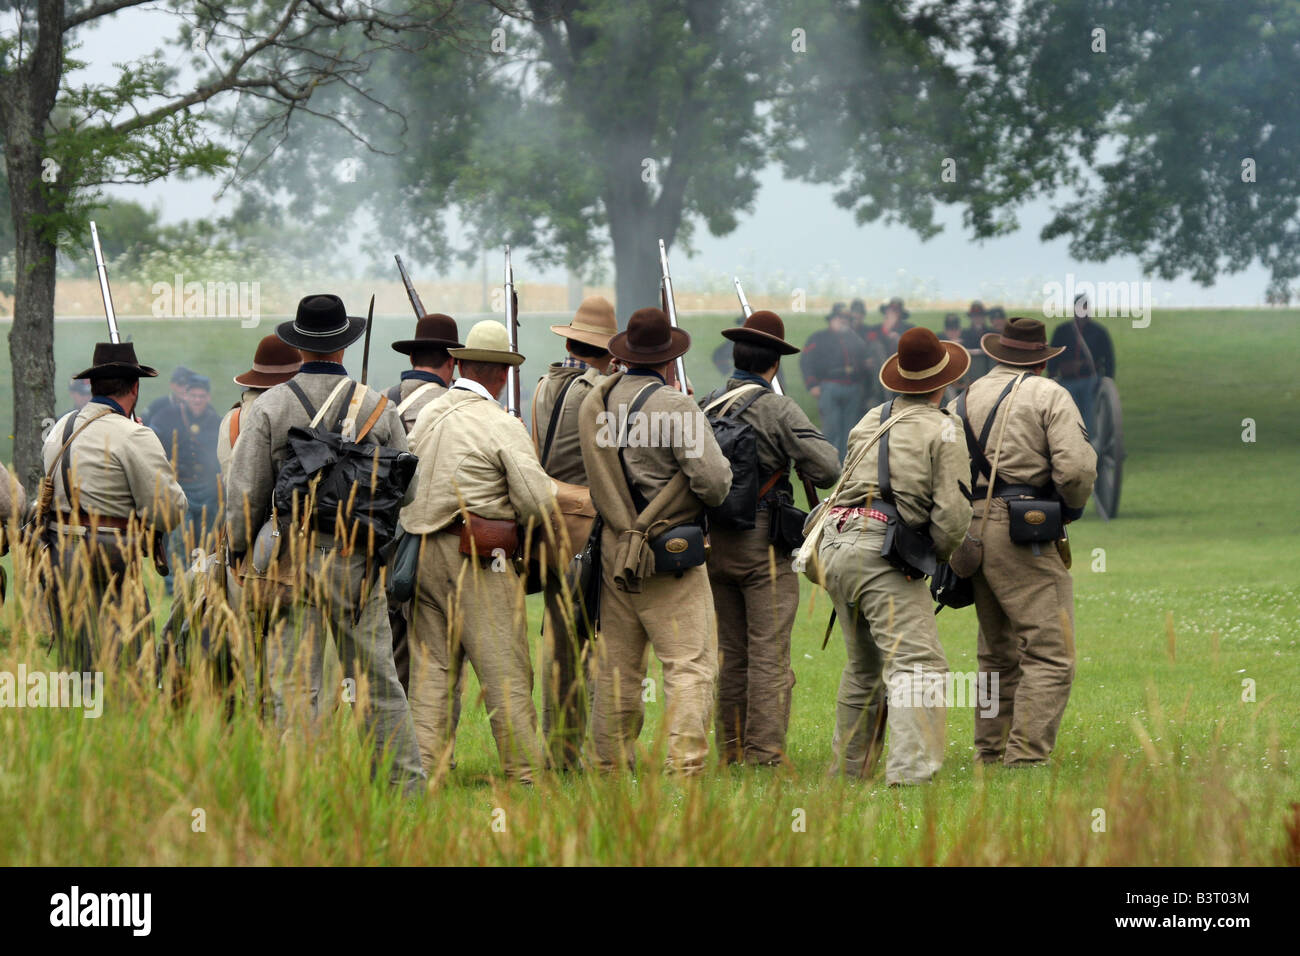 Des soldats de l'Union et des Confédérés s'affrontent au cours d'une bataille à une guerre civile Reenactment Campement Banque D'Images